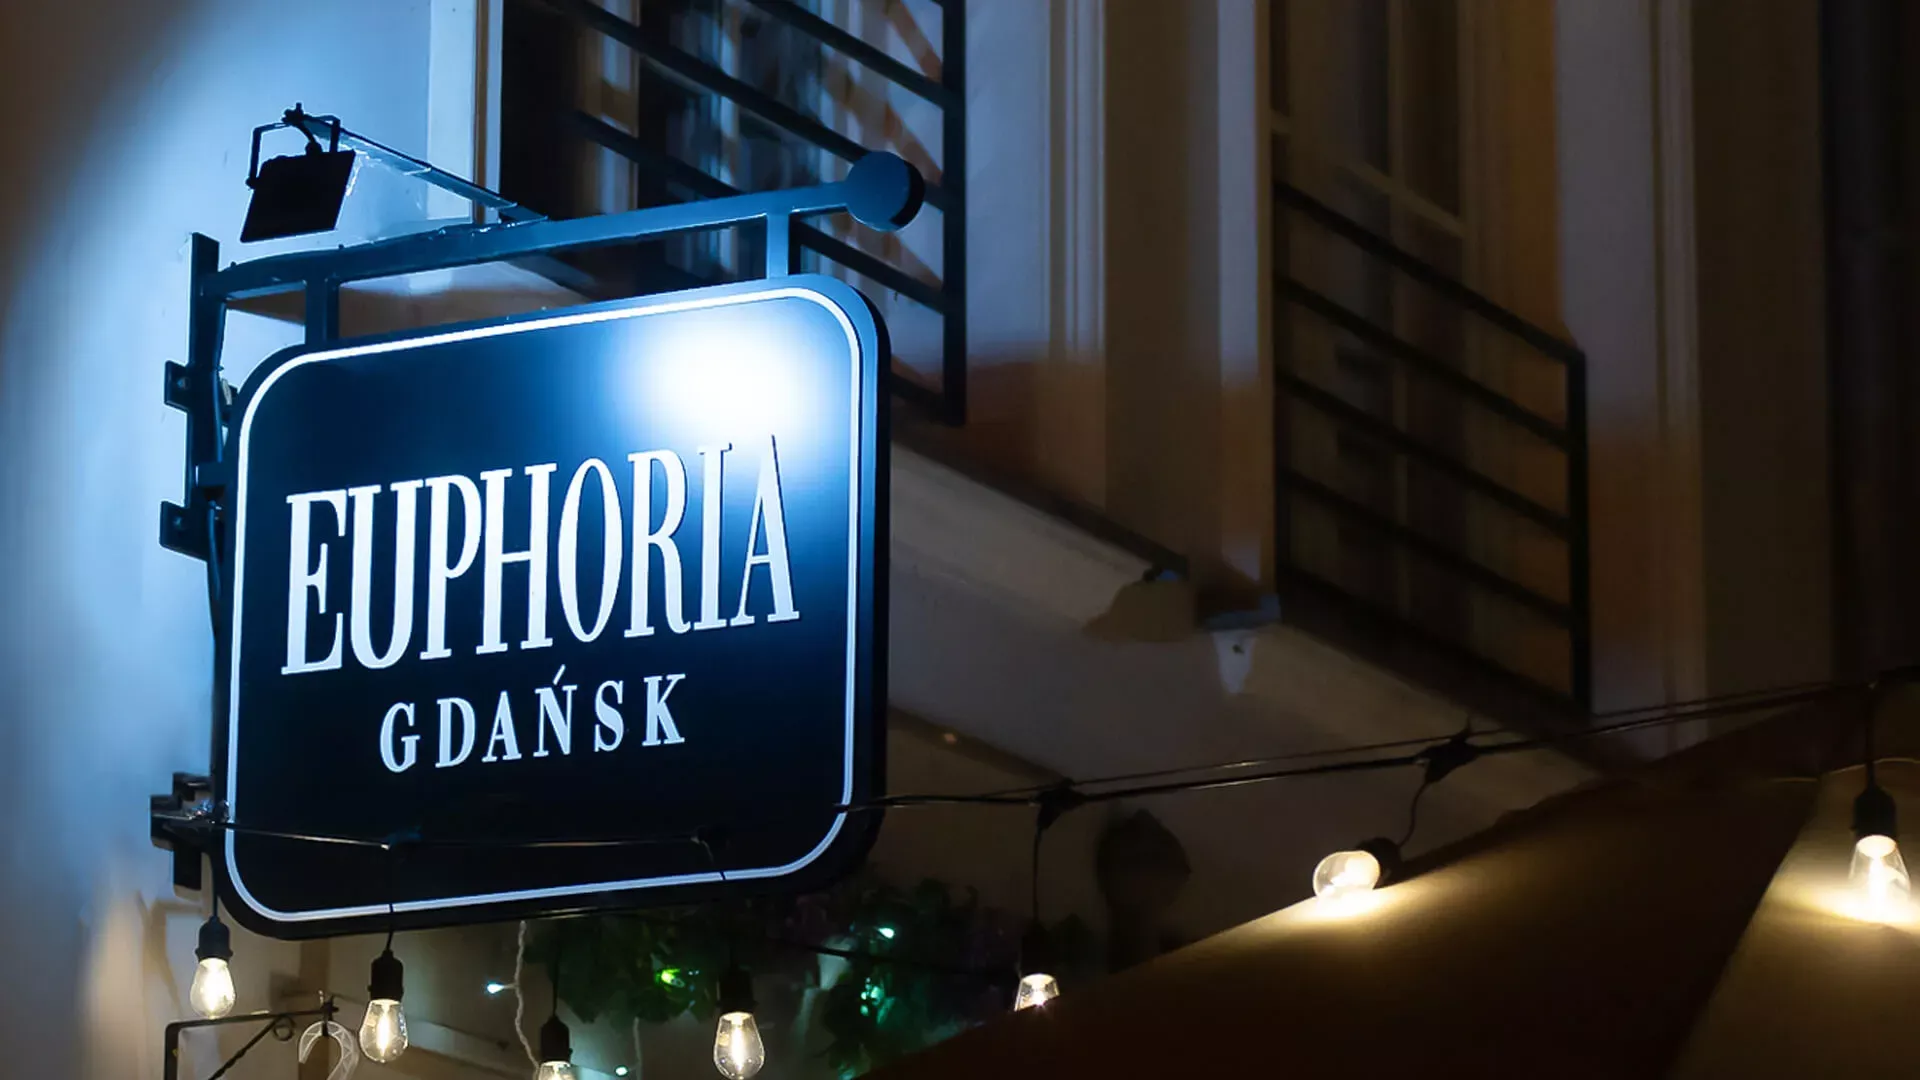 Euphoria Gdansk - sémaphore perpendiculaire, double face en noir avec lettres blanches la nuit